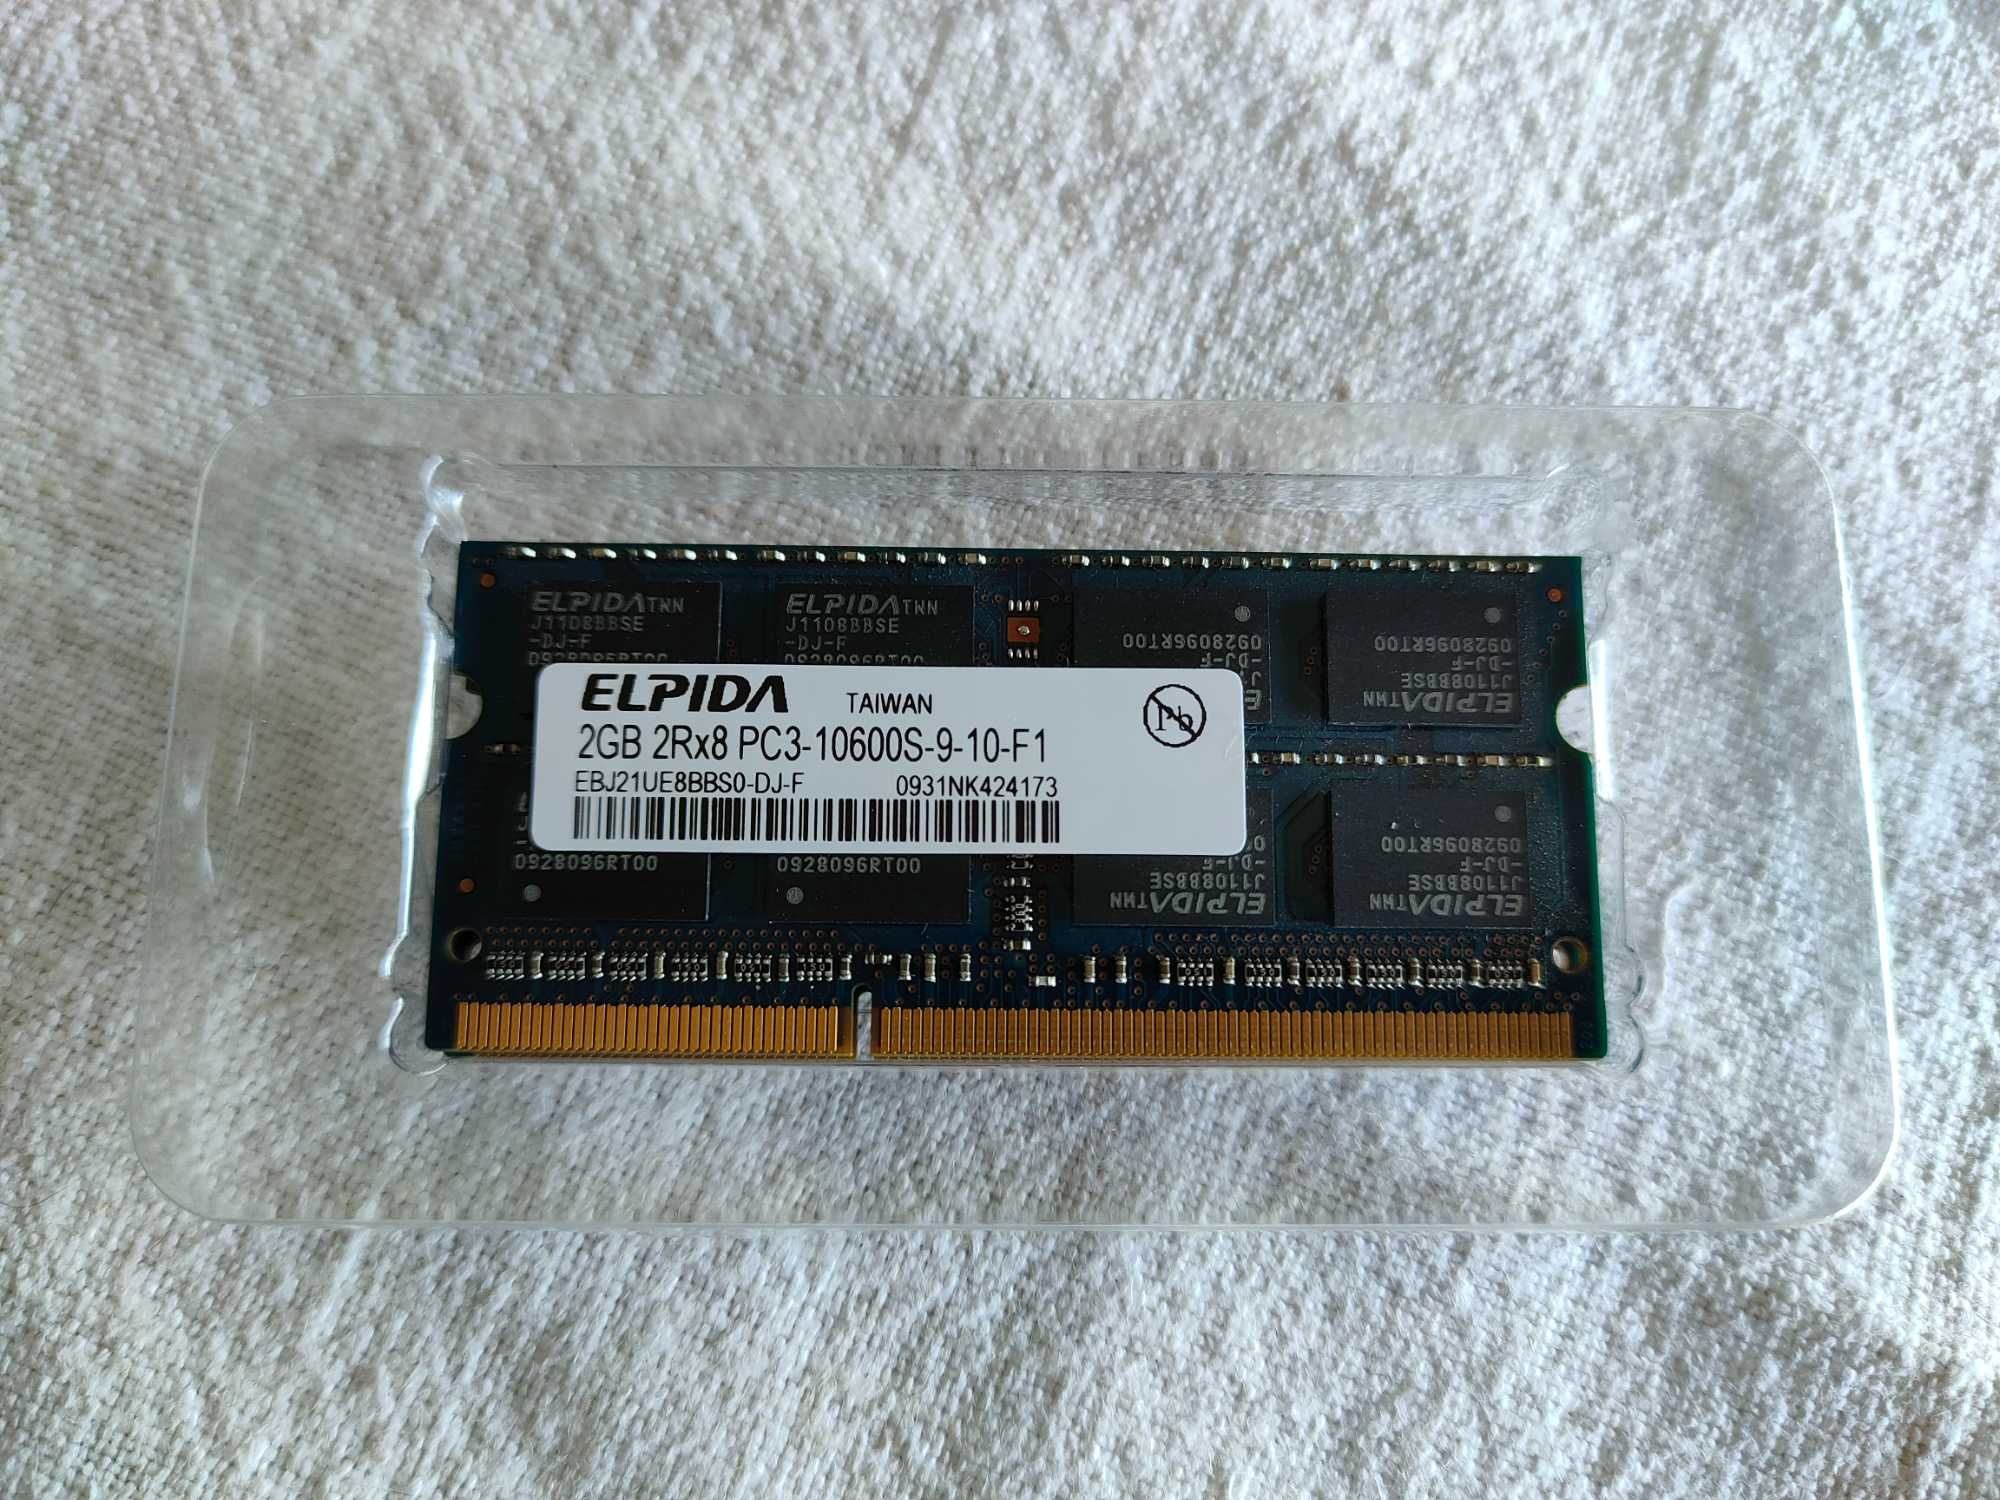 2x2GB memória RAM Elpida 2Rx8 PC3-10600S-9-10-F1